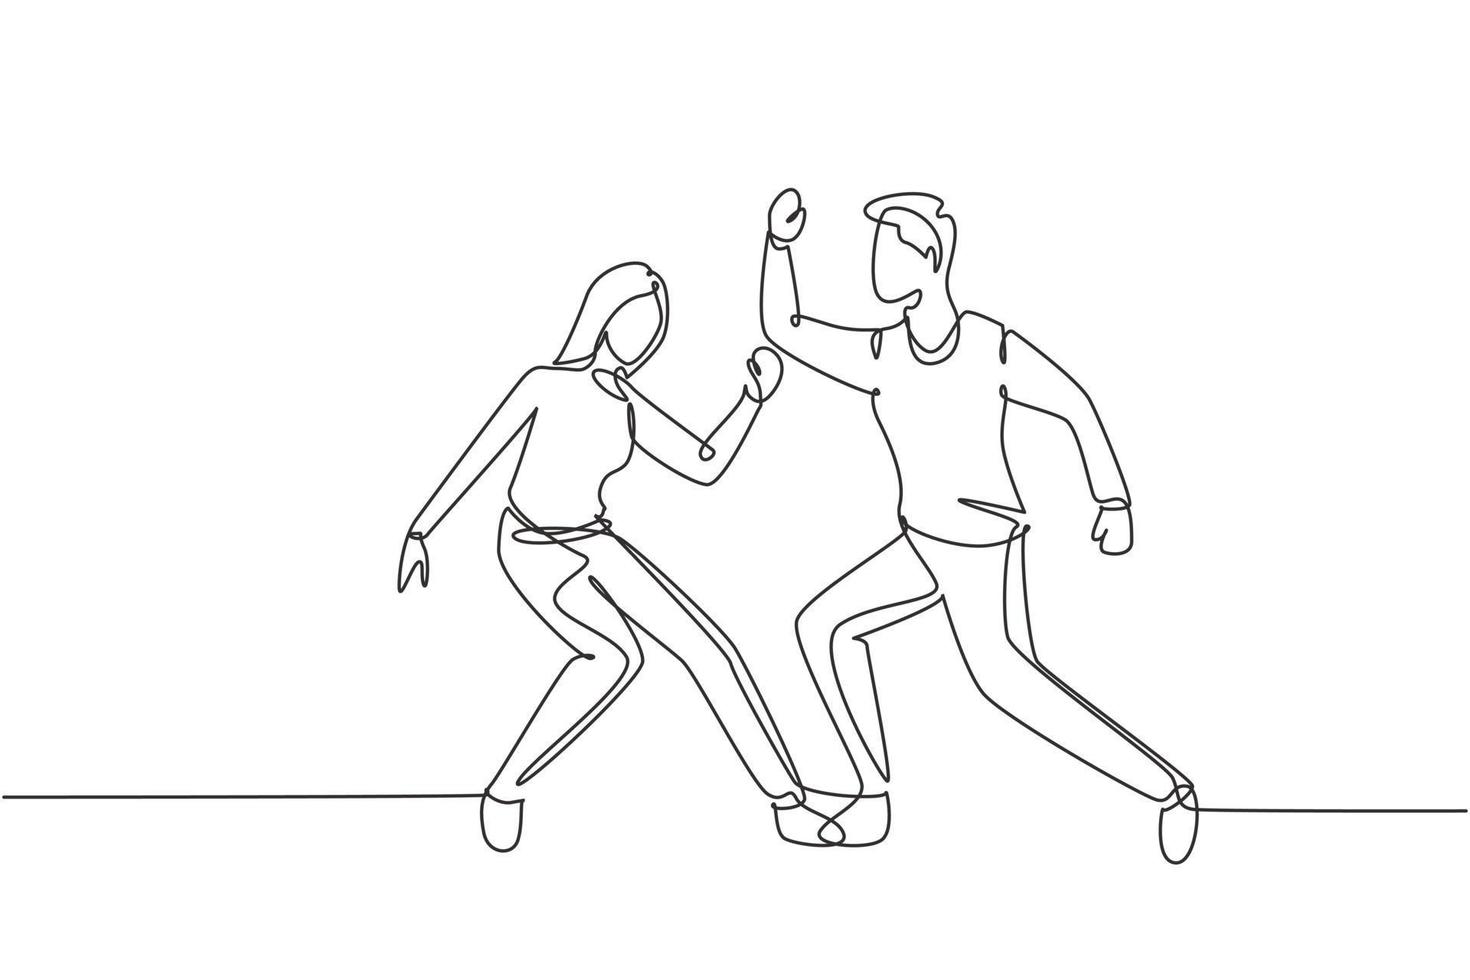 dessin continu d'une ligne homme et femme dansant le lindy hop ou swing. personnages masculins et féminins exécutant la danse à l'école ou à la fête. mode de vie amusant. illustration graphique de vecteur de conception de dessin à une seule ligne